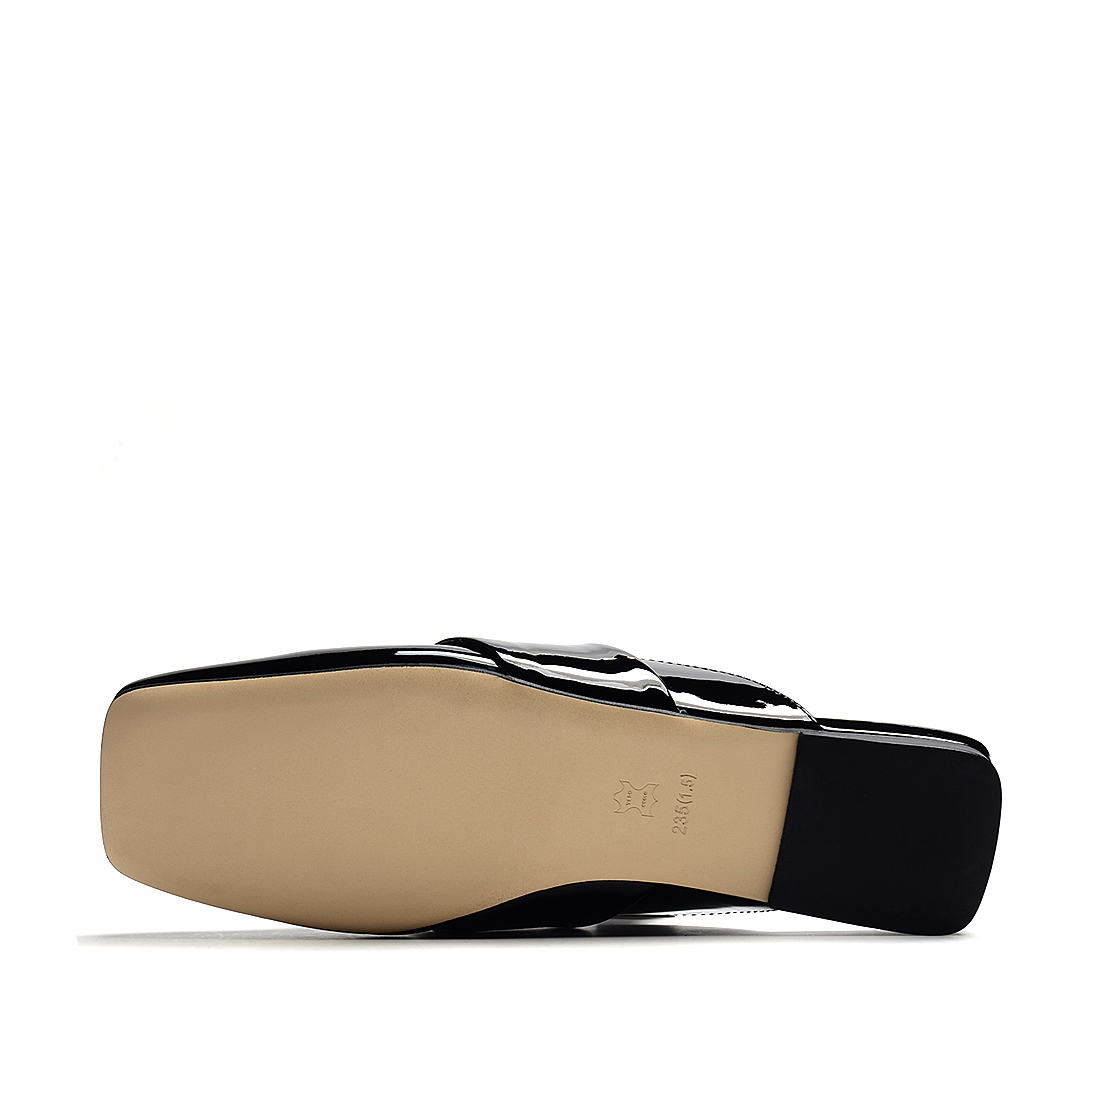 [RedLoafer]欧美风金属装饰牛漆皮革拖鞋(尺码标准)
编号：A3878T1A76